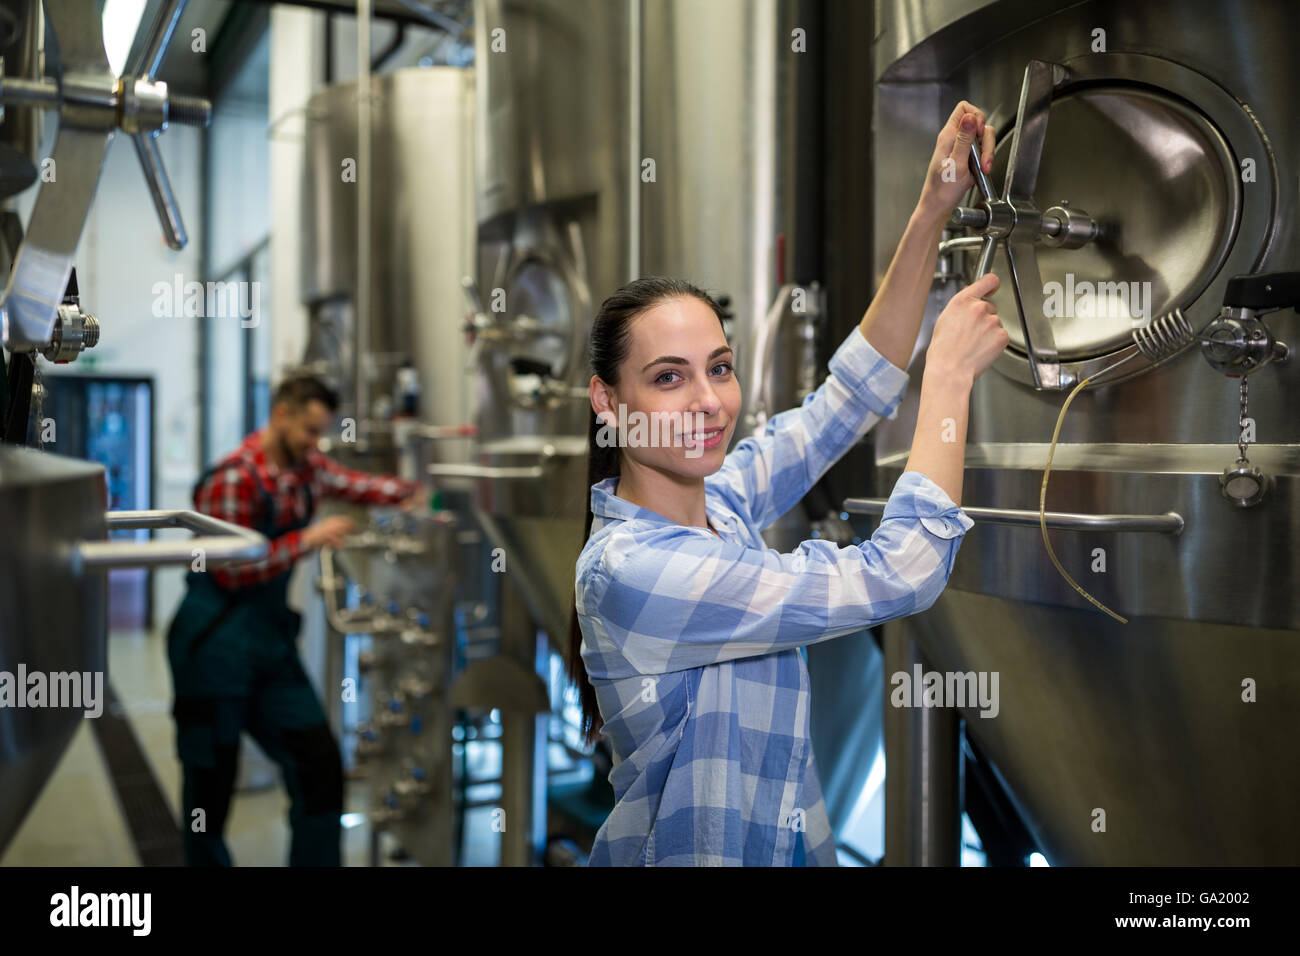 Weibliche Instandhalter Brauerei Maschine prüfen Stockfoto